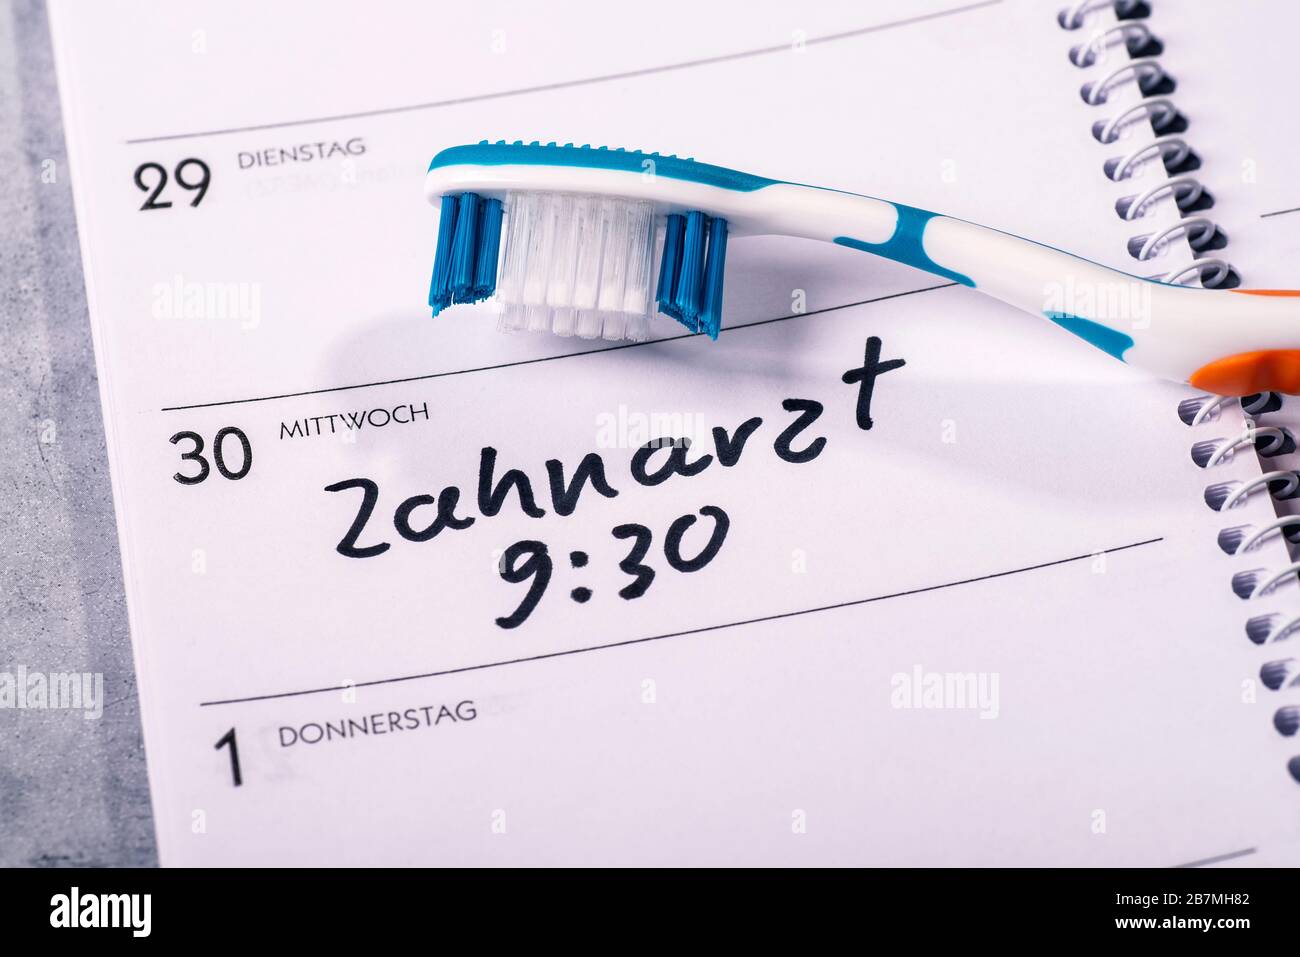 Calendario in cui è collocato uno spazzolino da denti e in cui è inserito un appuntamento per una visita al dentista Foto Stock